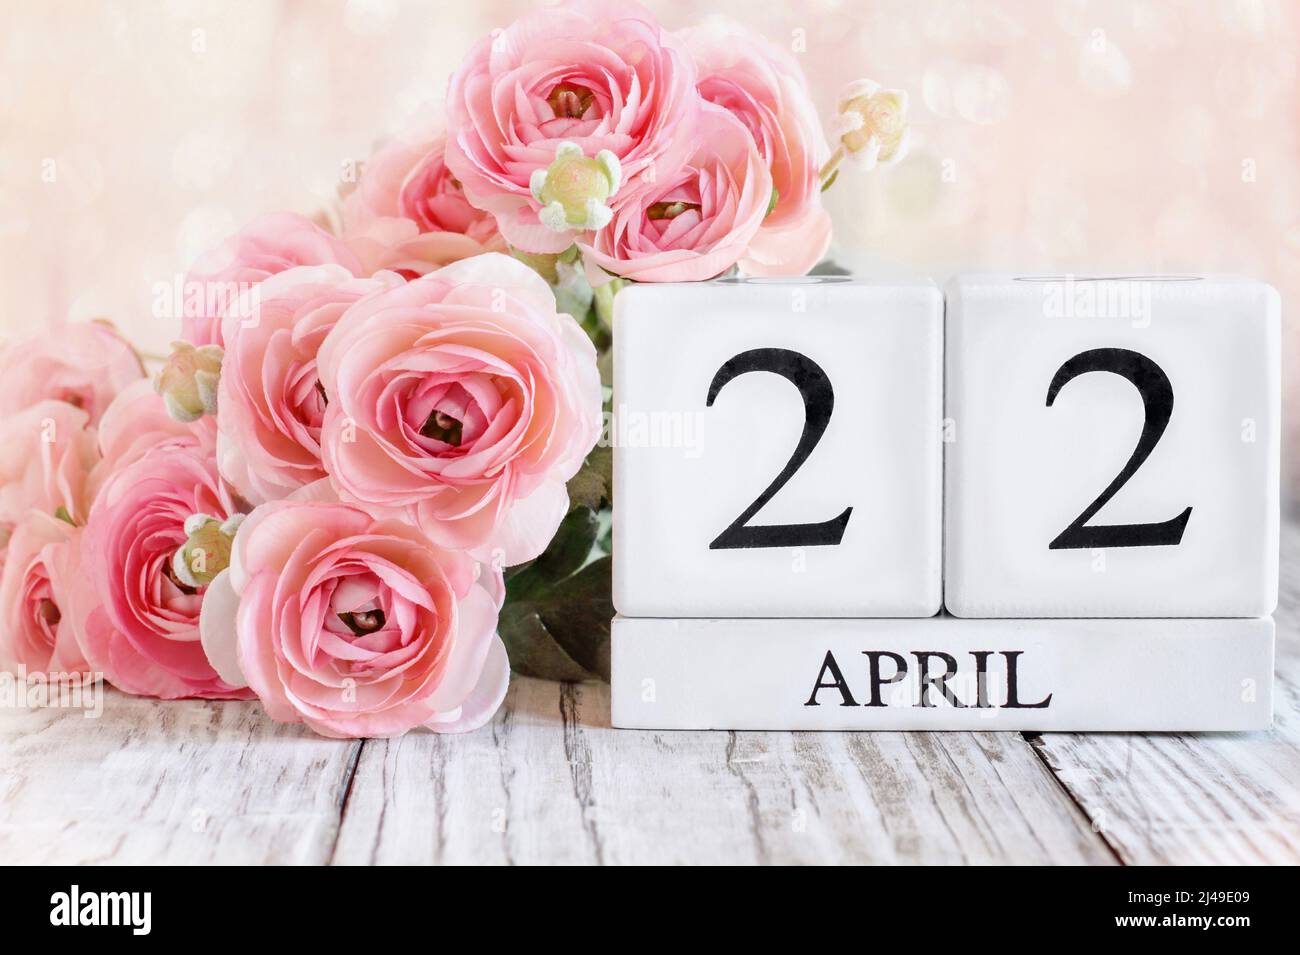 Bloques de calendario de madera blanca con la fecha del 22nd de abril para el Día de la Tierra. Enfoque selectivo con fondo borroso. Foto de stock